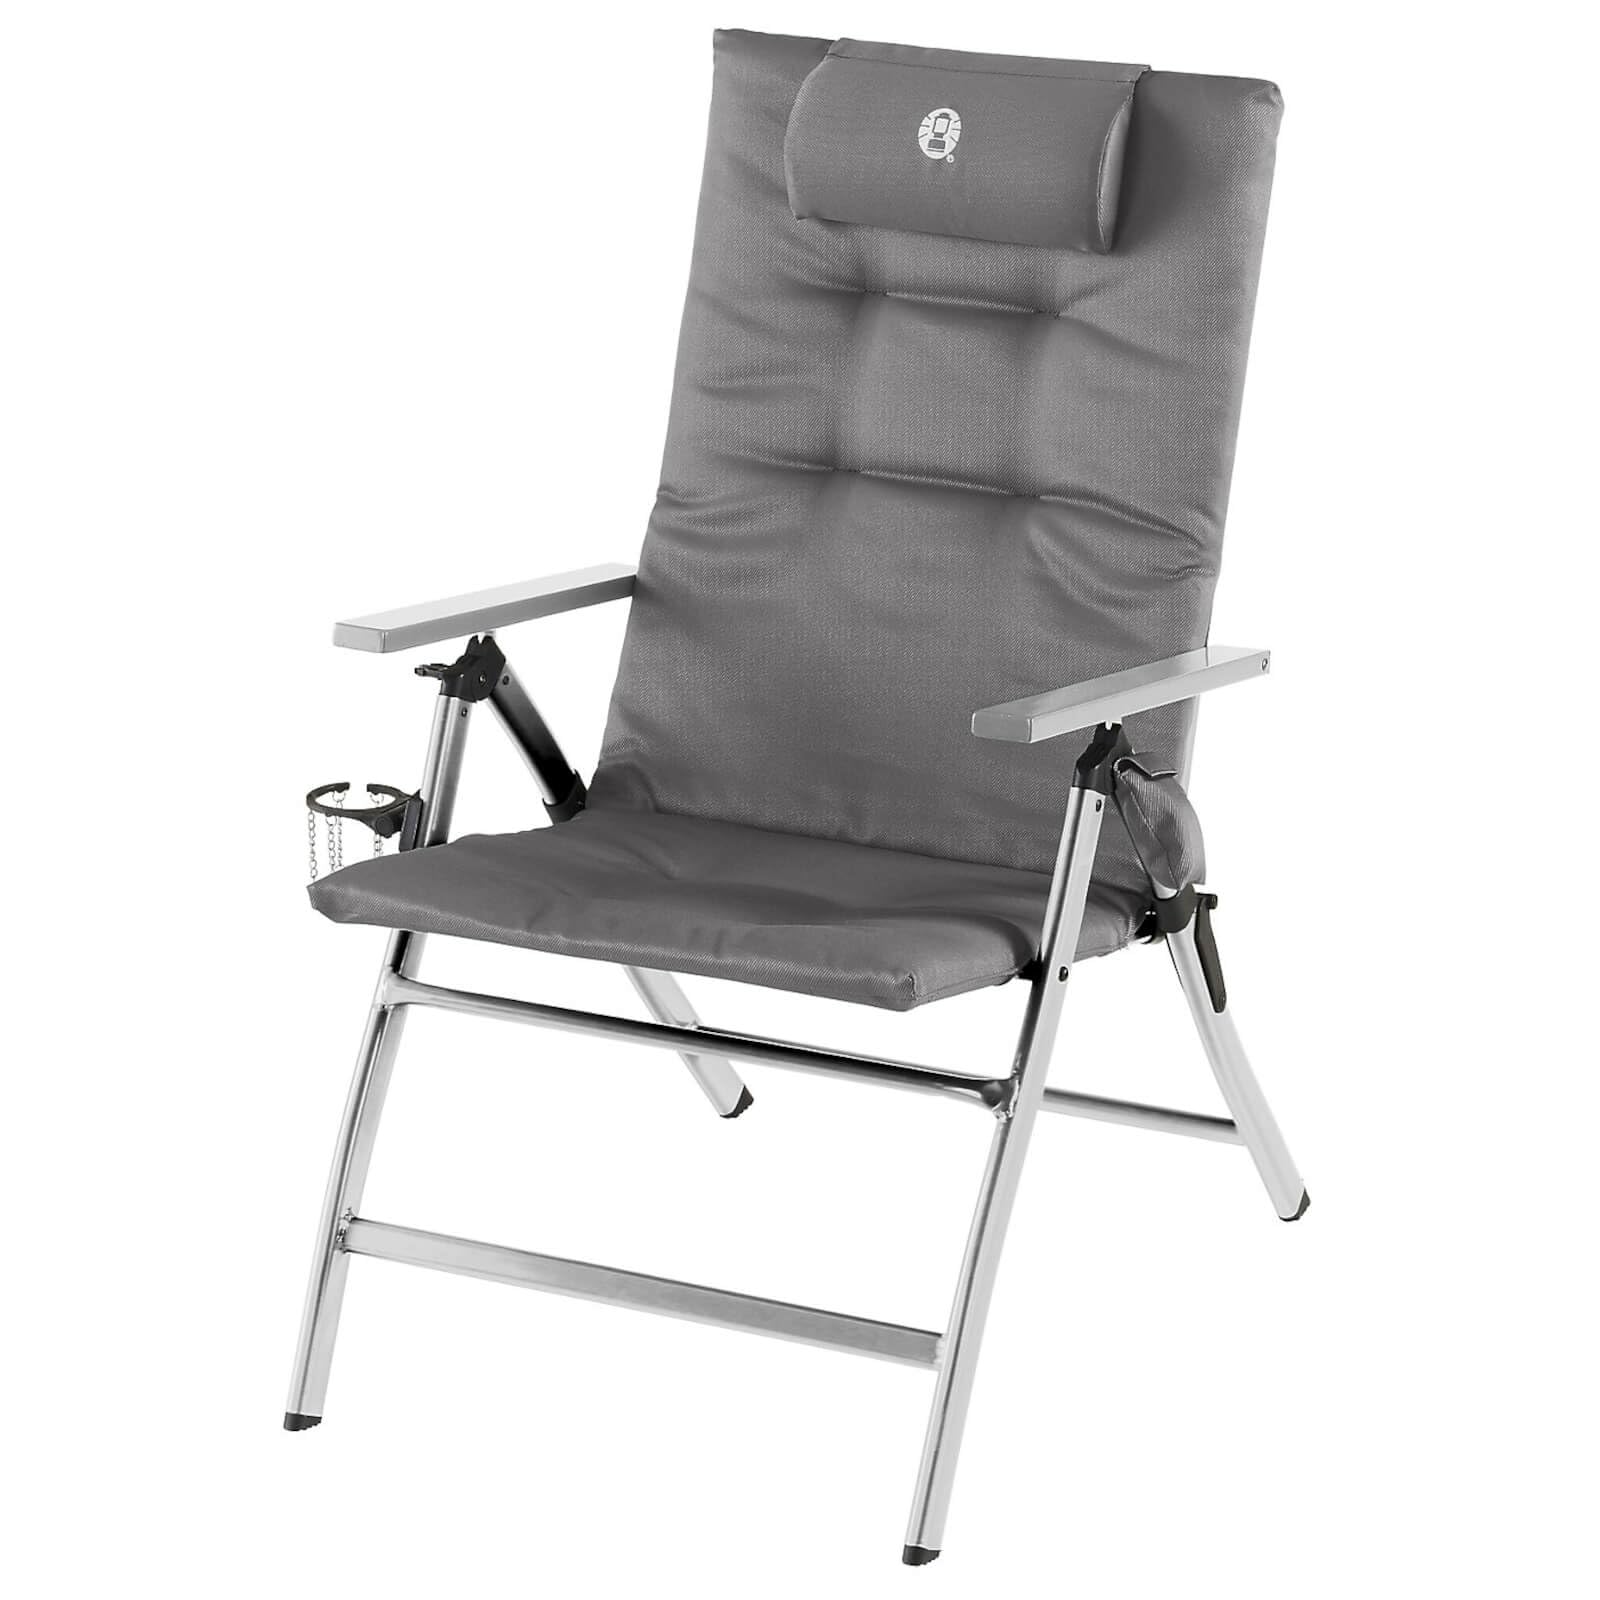 Coleman Premium Aluminum Campingstuhl mit gepolsterter Rückenlehne und 5-Positionen Einstellung - Extrem Stabiler Stuhl mit Becherhalter für höchsten Komfort und Qualität